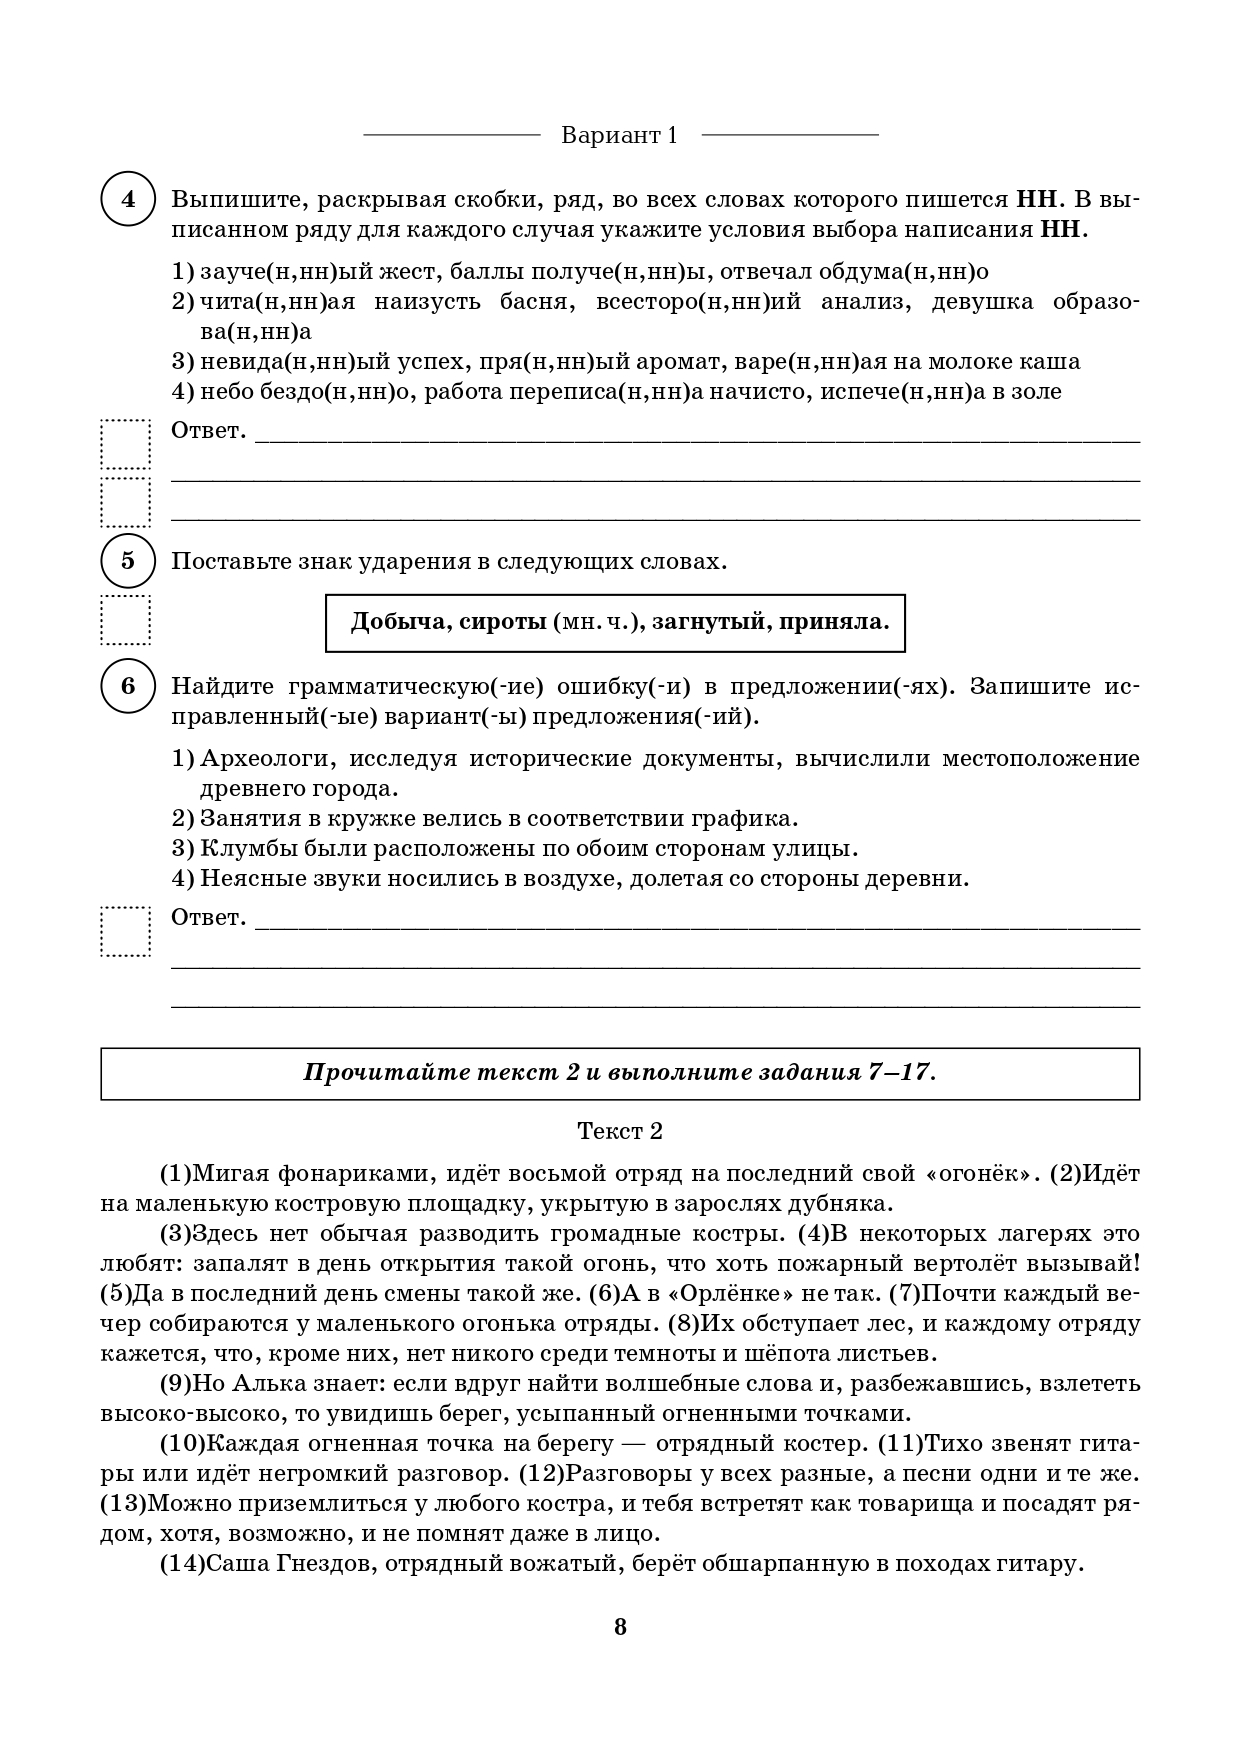 Русский язык. 8 класс. ВПР. 10 тренировочных вариантов. 6-е изд.